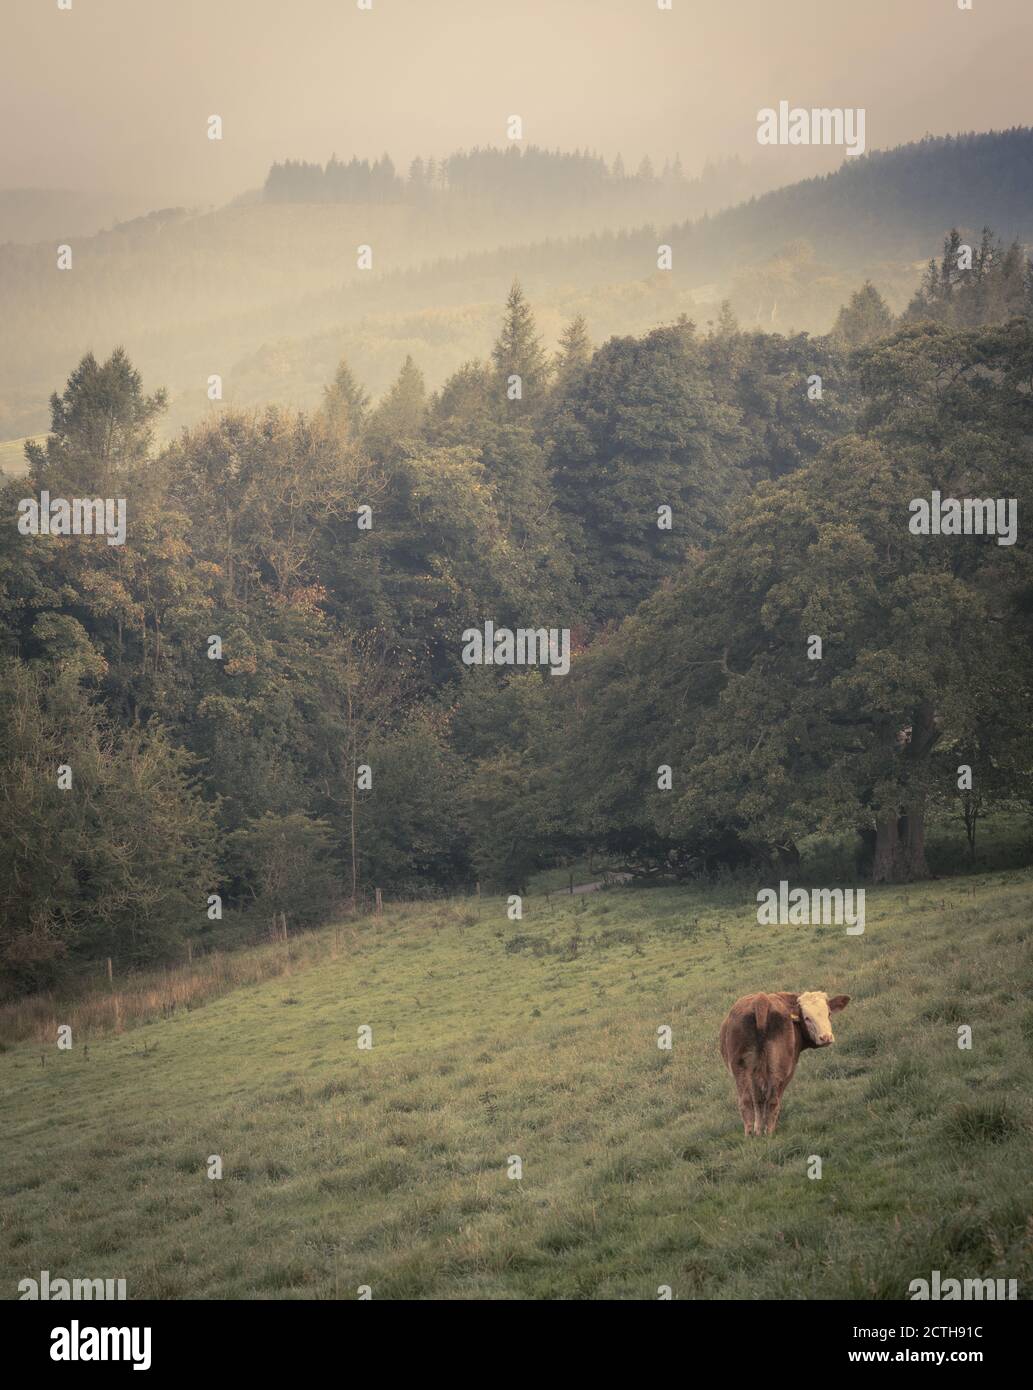 Vache dans un champ avec des arbres et des collines brumeuses Banque D'Images